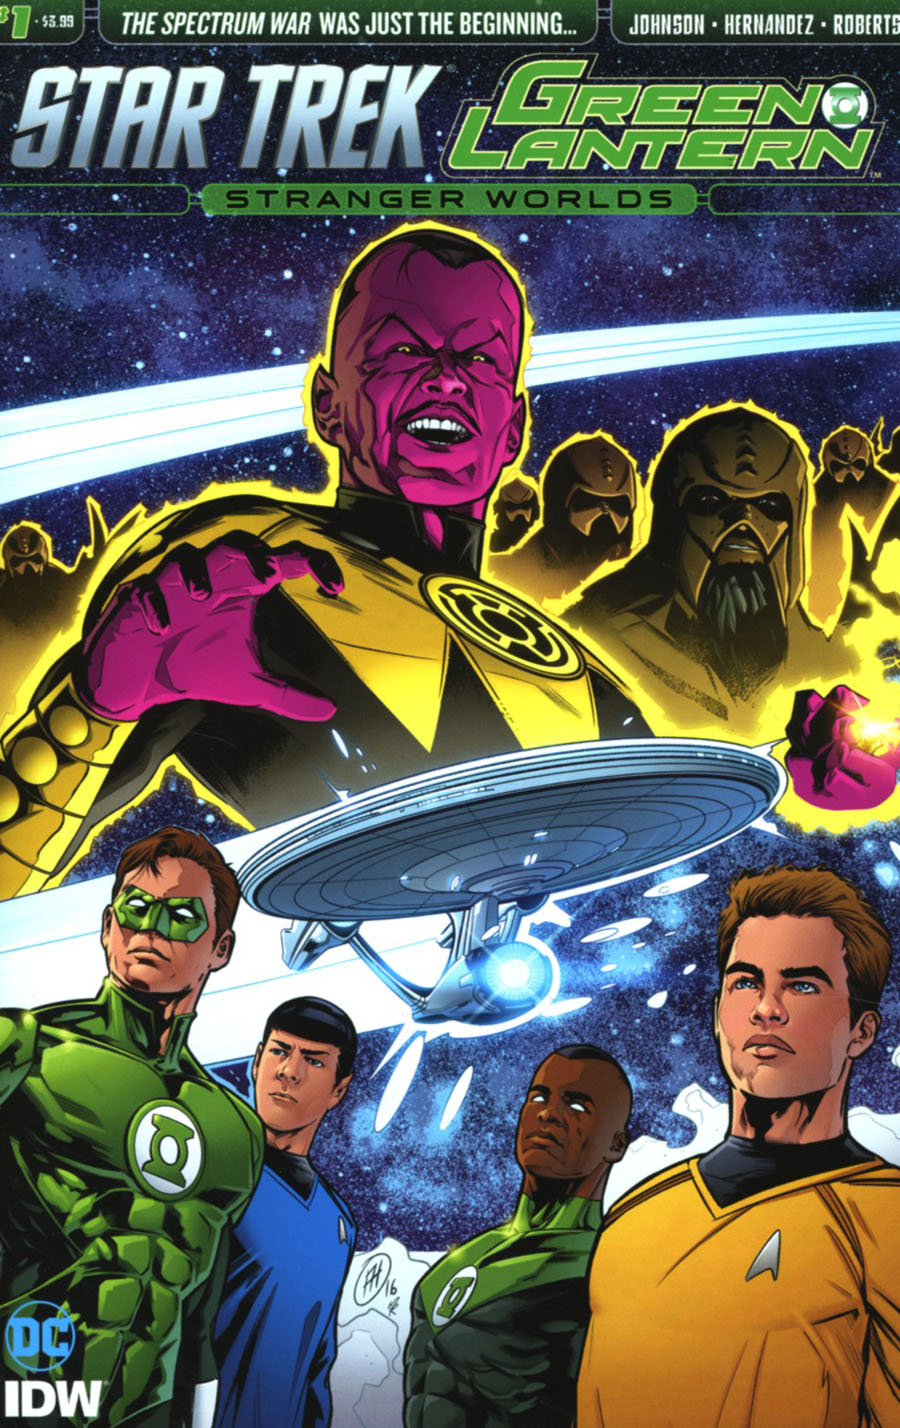 Star Trek Green Lantern Vol 2 Stranger Worlds #1 Cover A Regular Angel Hernandez Cover